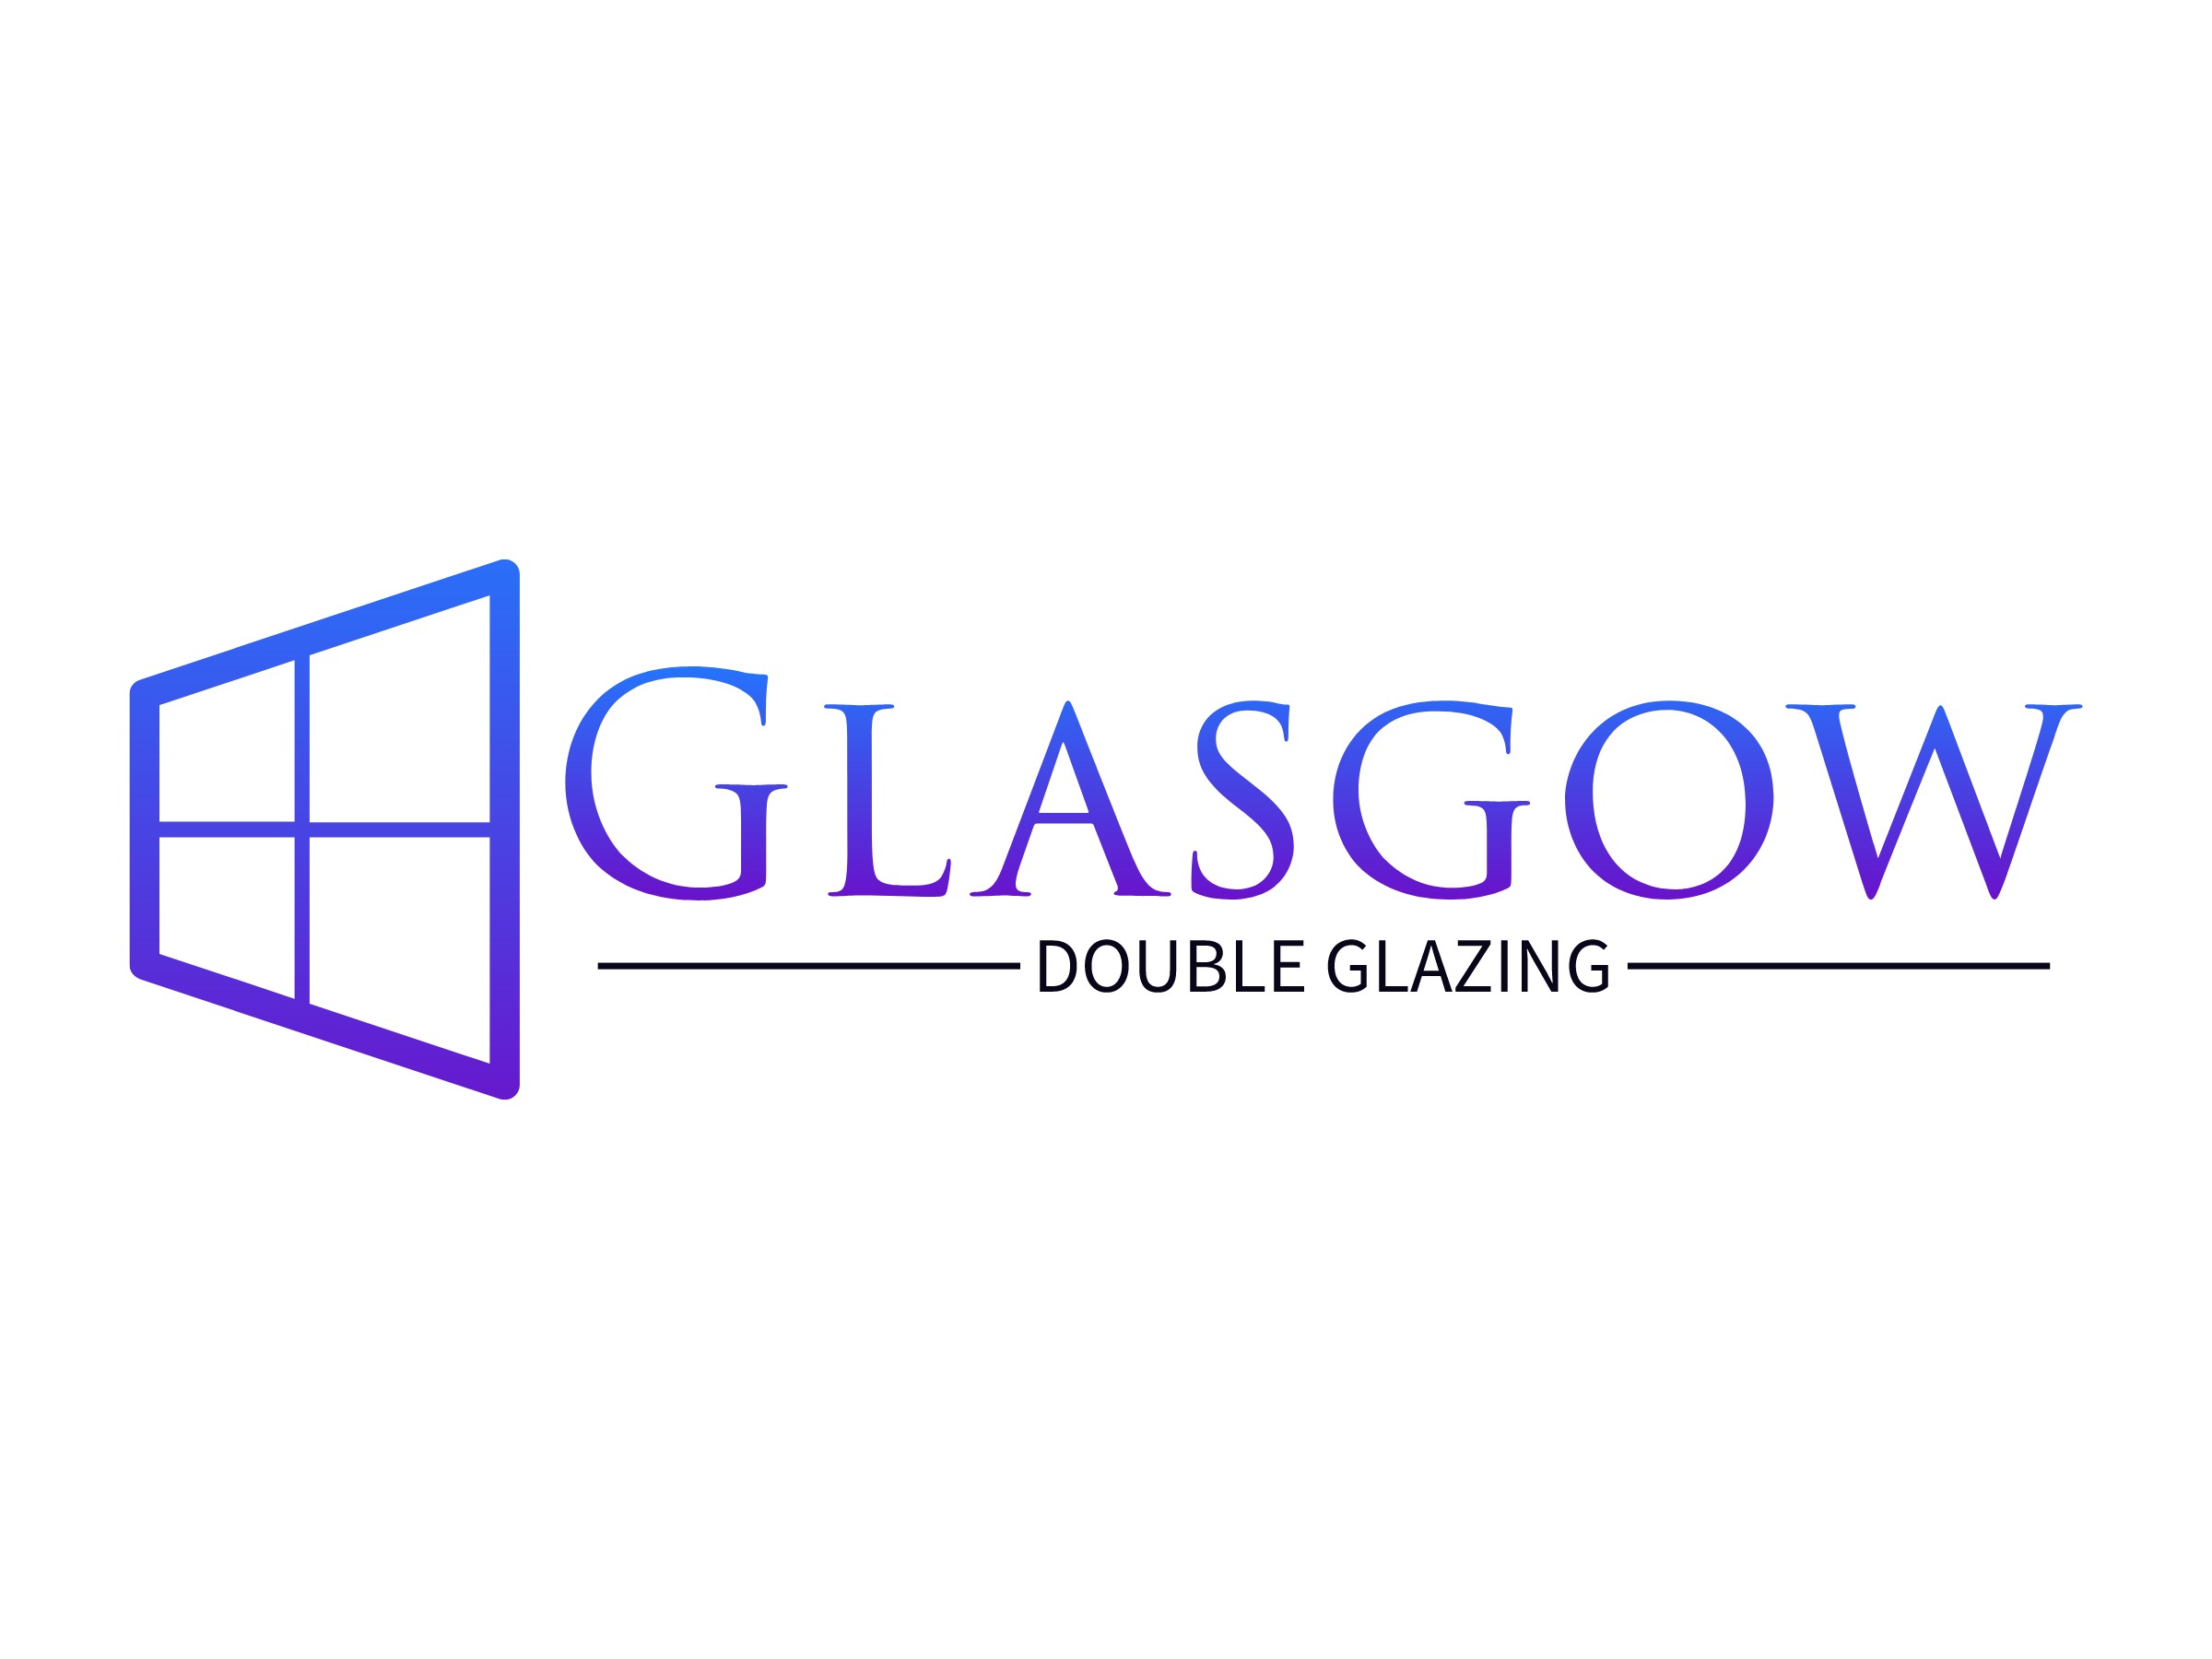 Glasgow Double Glazing logo